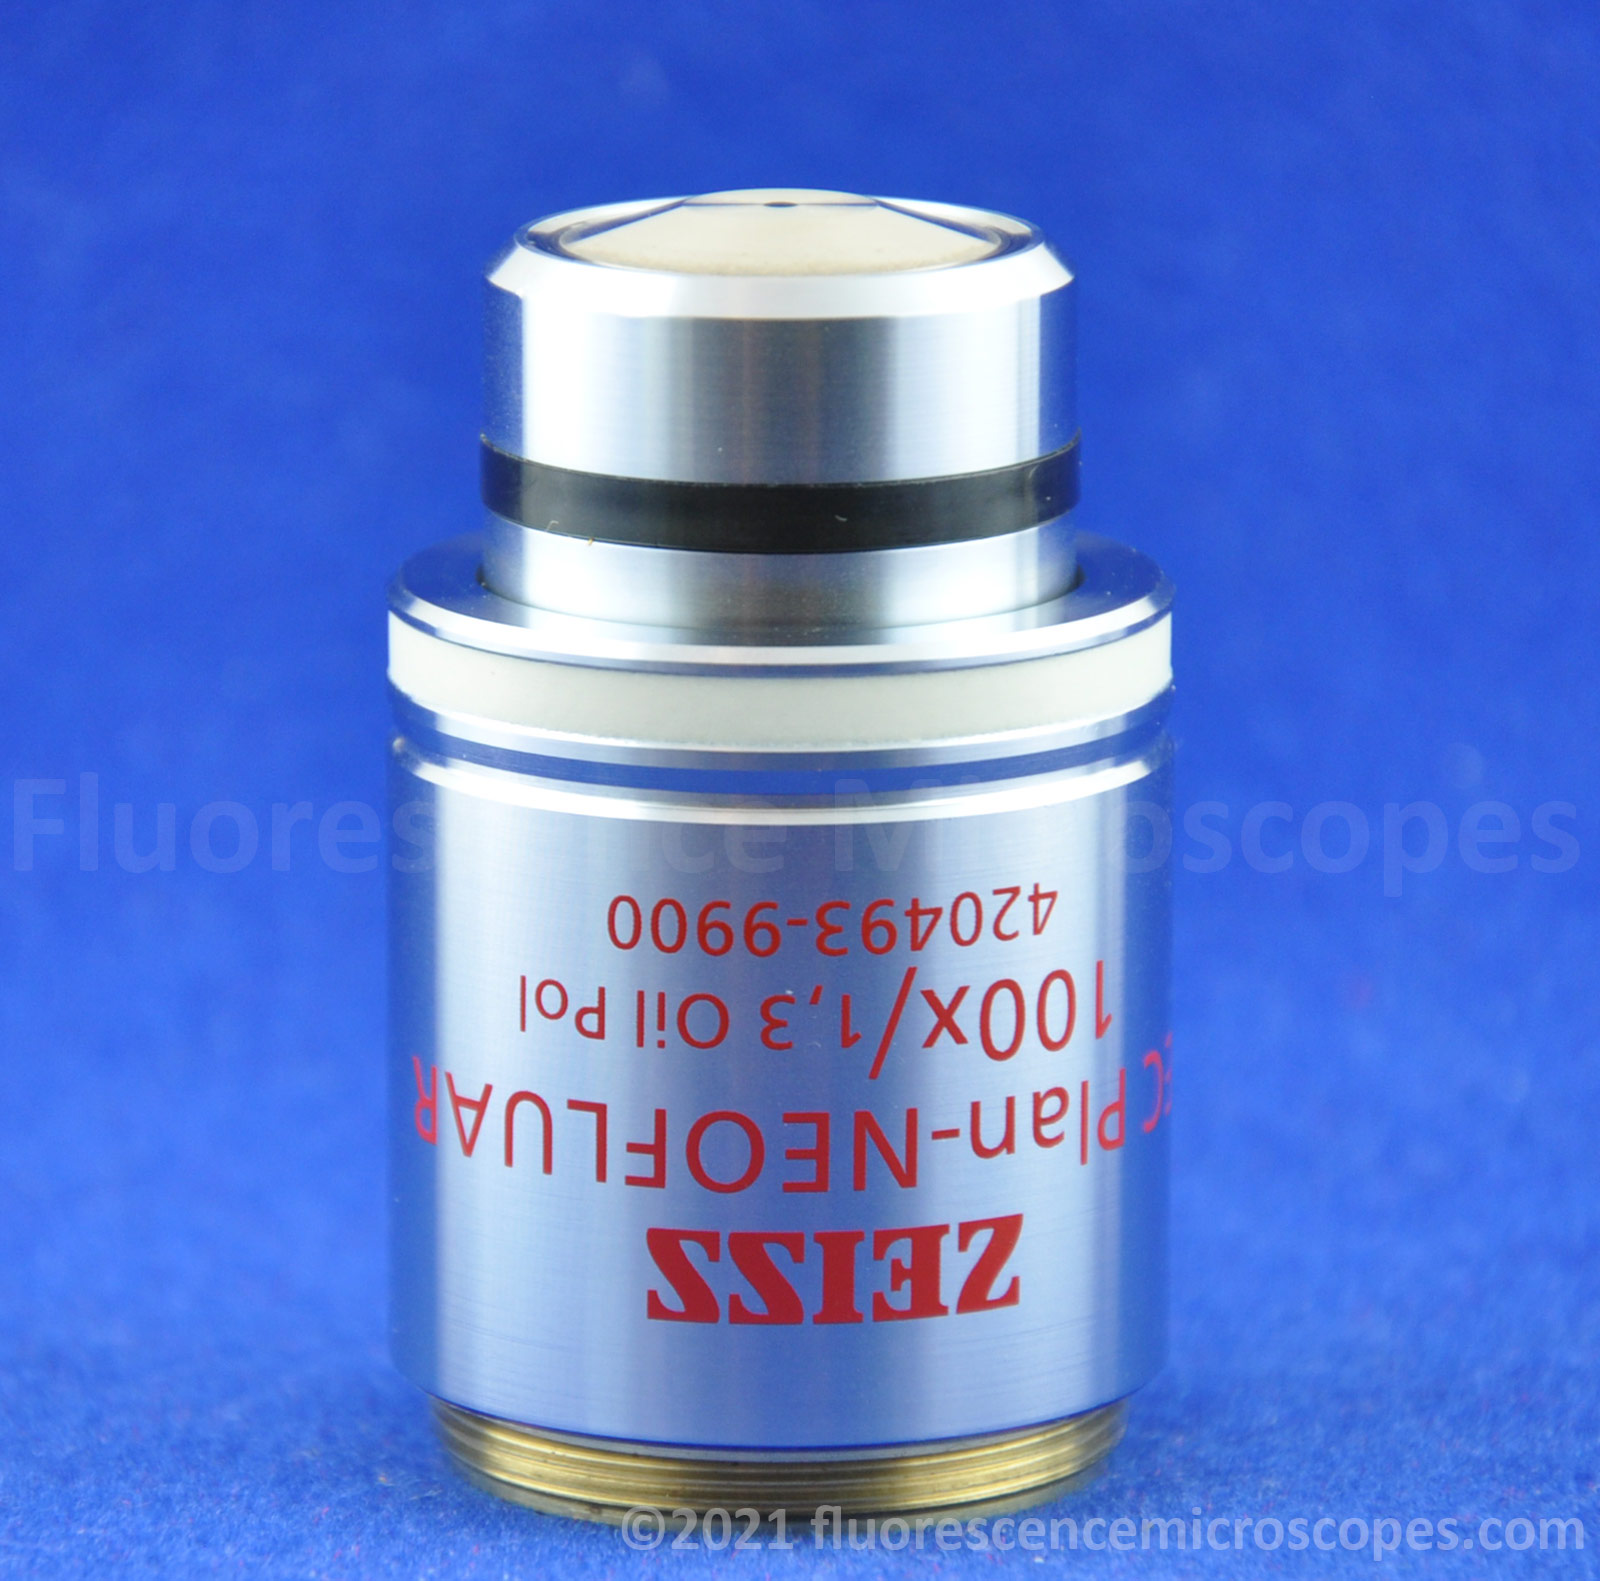 Zeiss EC Plan-NeoFluar 100x / 1.3, ∞/0.17 M27 Oil Polarizing Microscope Objective